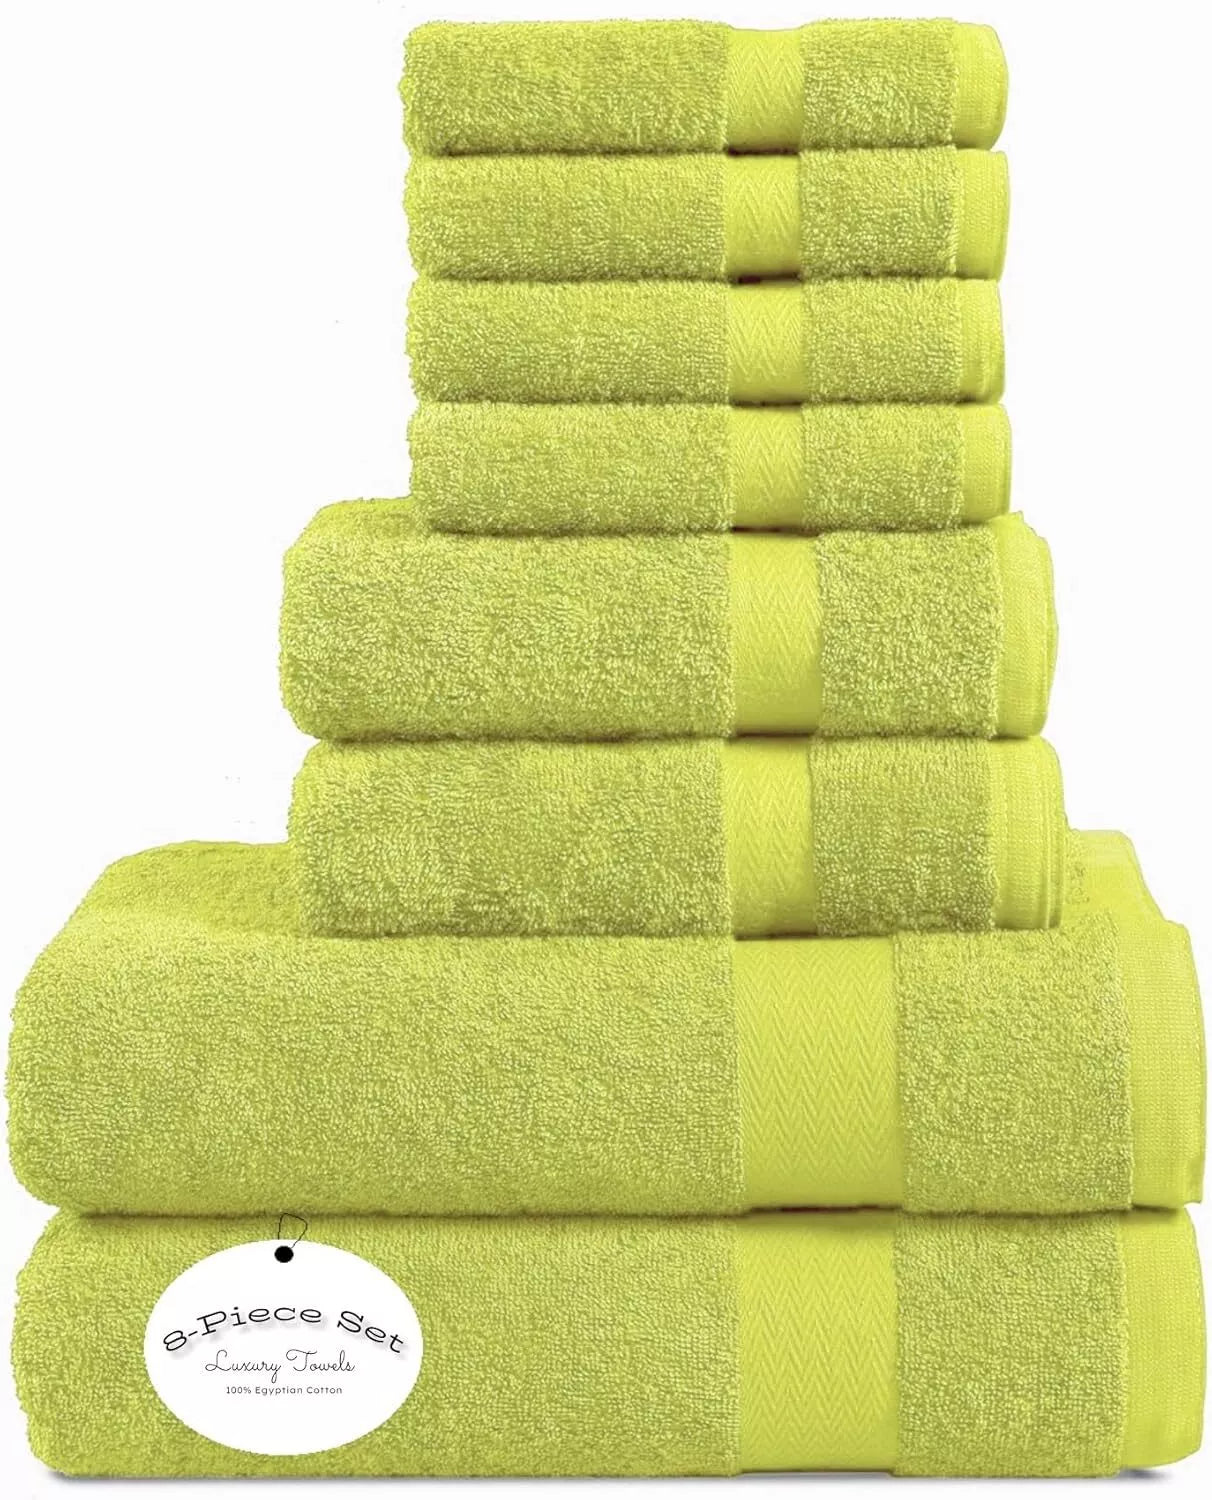 Luxury 4 Face Cloths, 2 Hand Towels, 2 Bath Towels- Super Soft 8 Piece 600GSM Towel Bale